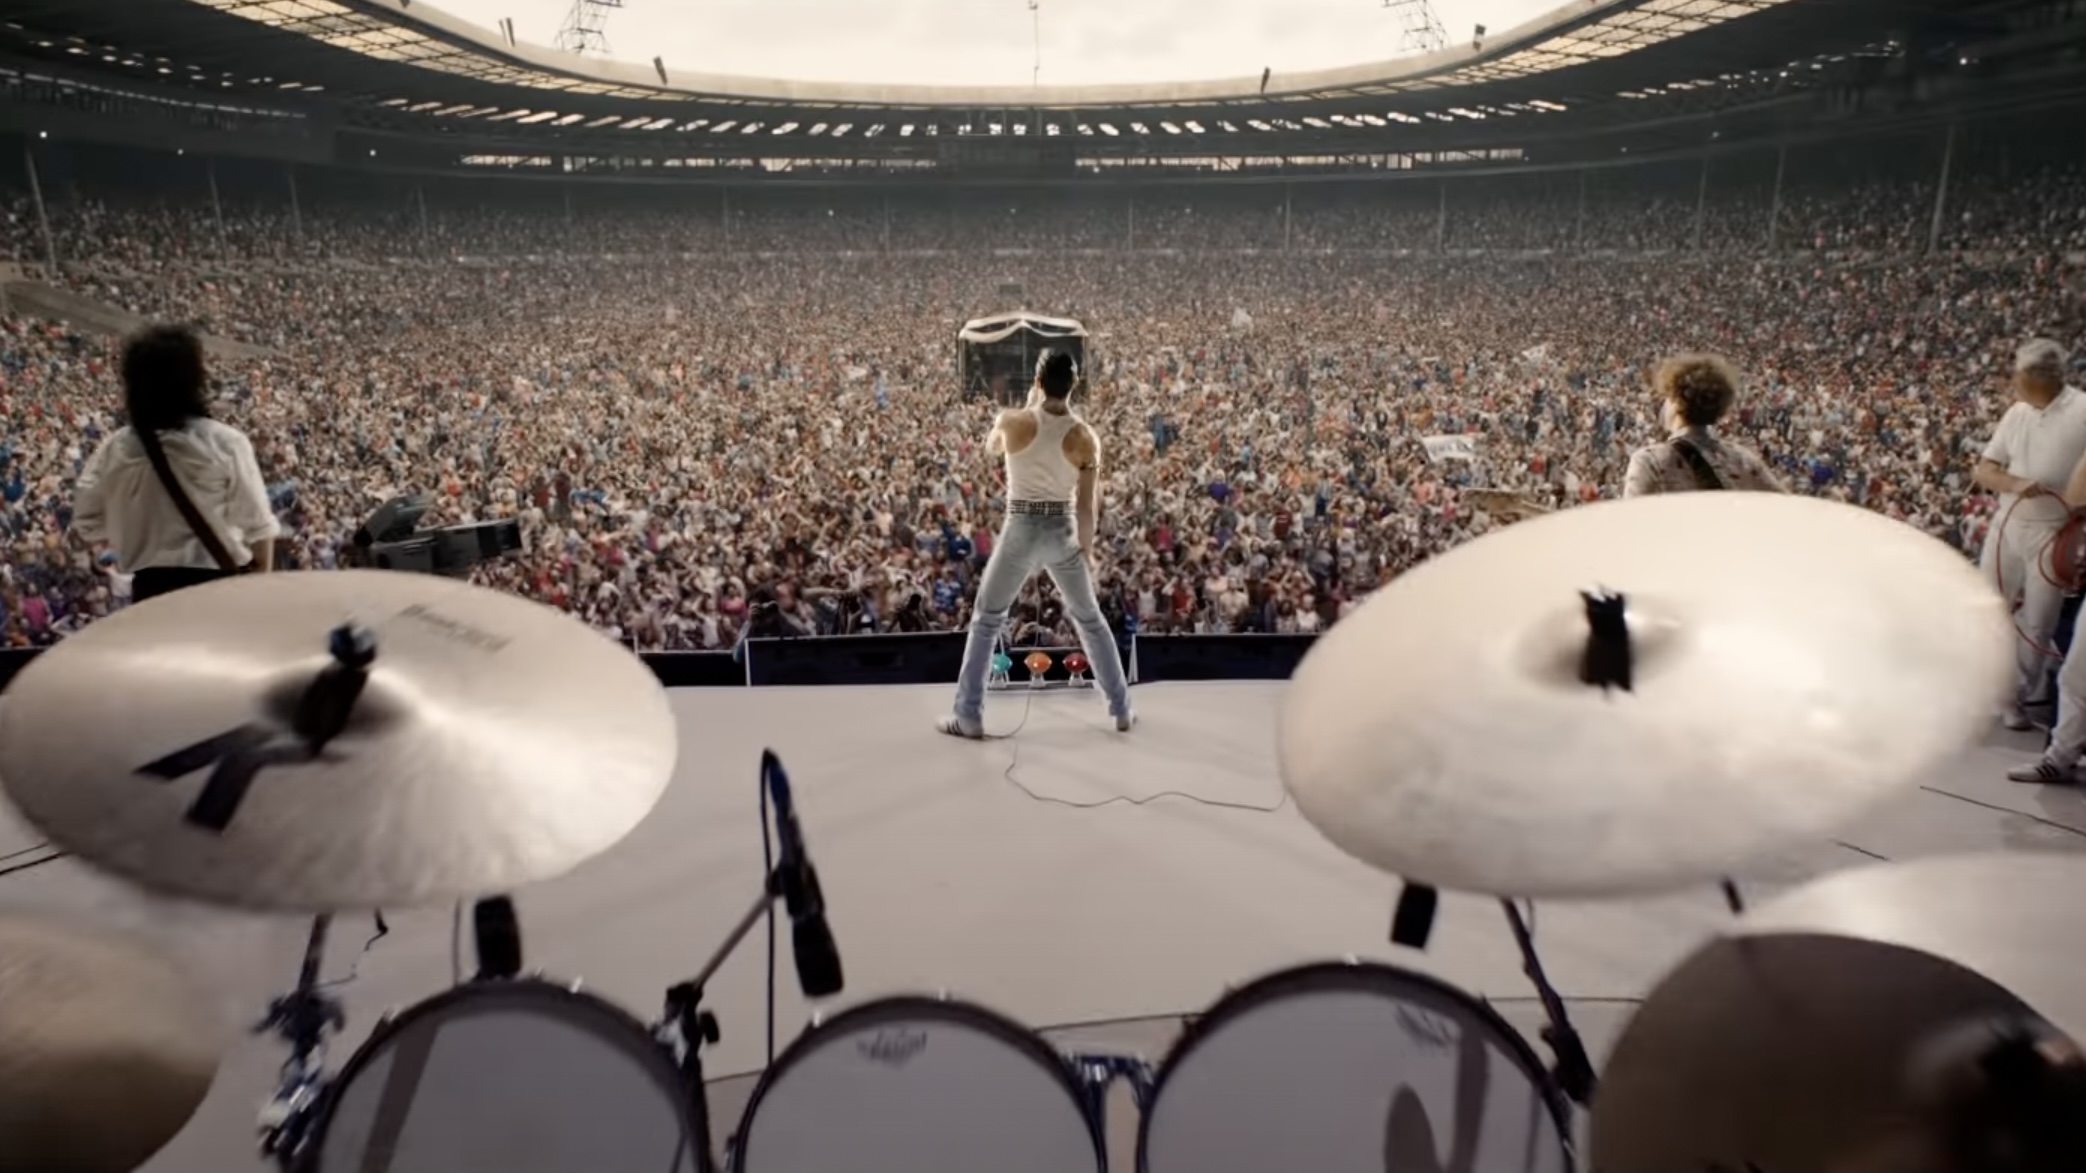 Концерт квин на стадионе. Фредди Меркьюри концерт на стадионе Уэмбли 1985. Queen концерт на стадионе Уэмбли 1986. Богемская рапсодия концерт 1985. Фредди Меркури на стадионе Уэмбли 1986.